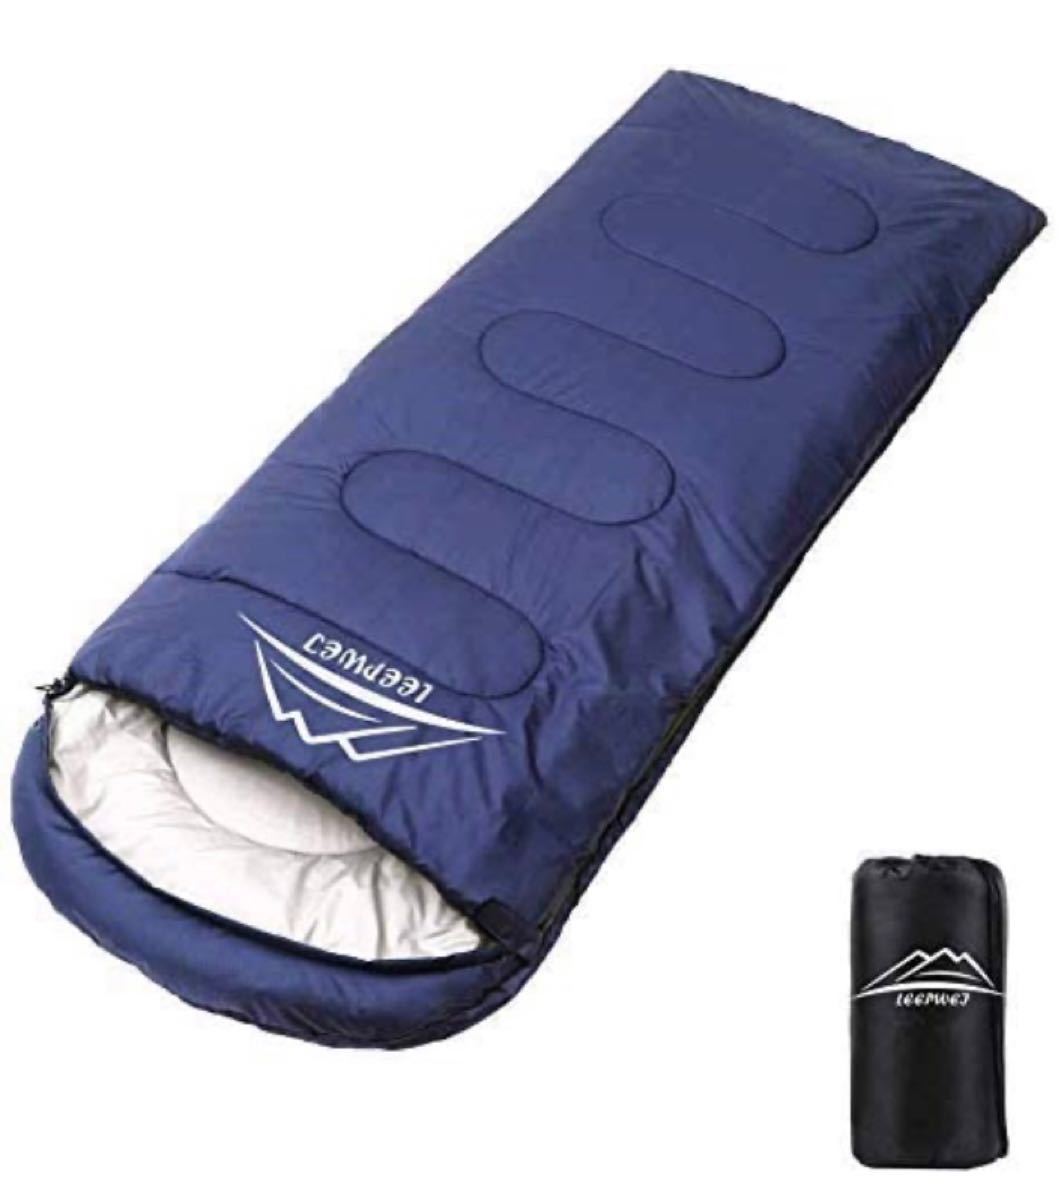 寝袋 封筒型 軽量 保温 210T防水シュラフ コンパクト アウトドア キャンプ 登山 車中泊 防災用 丸洗い可能